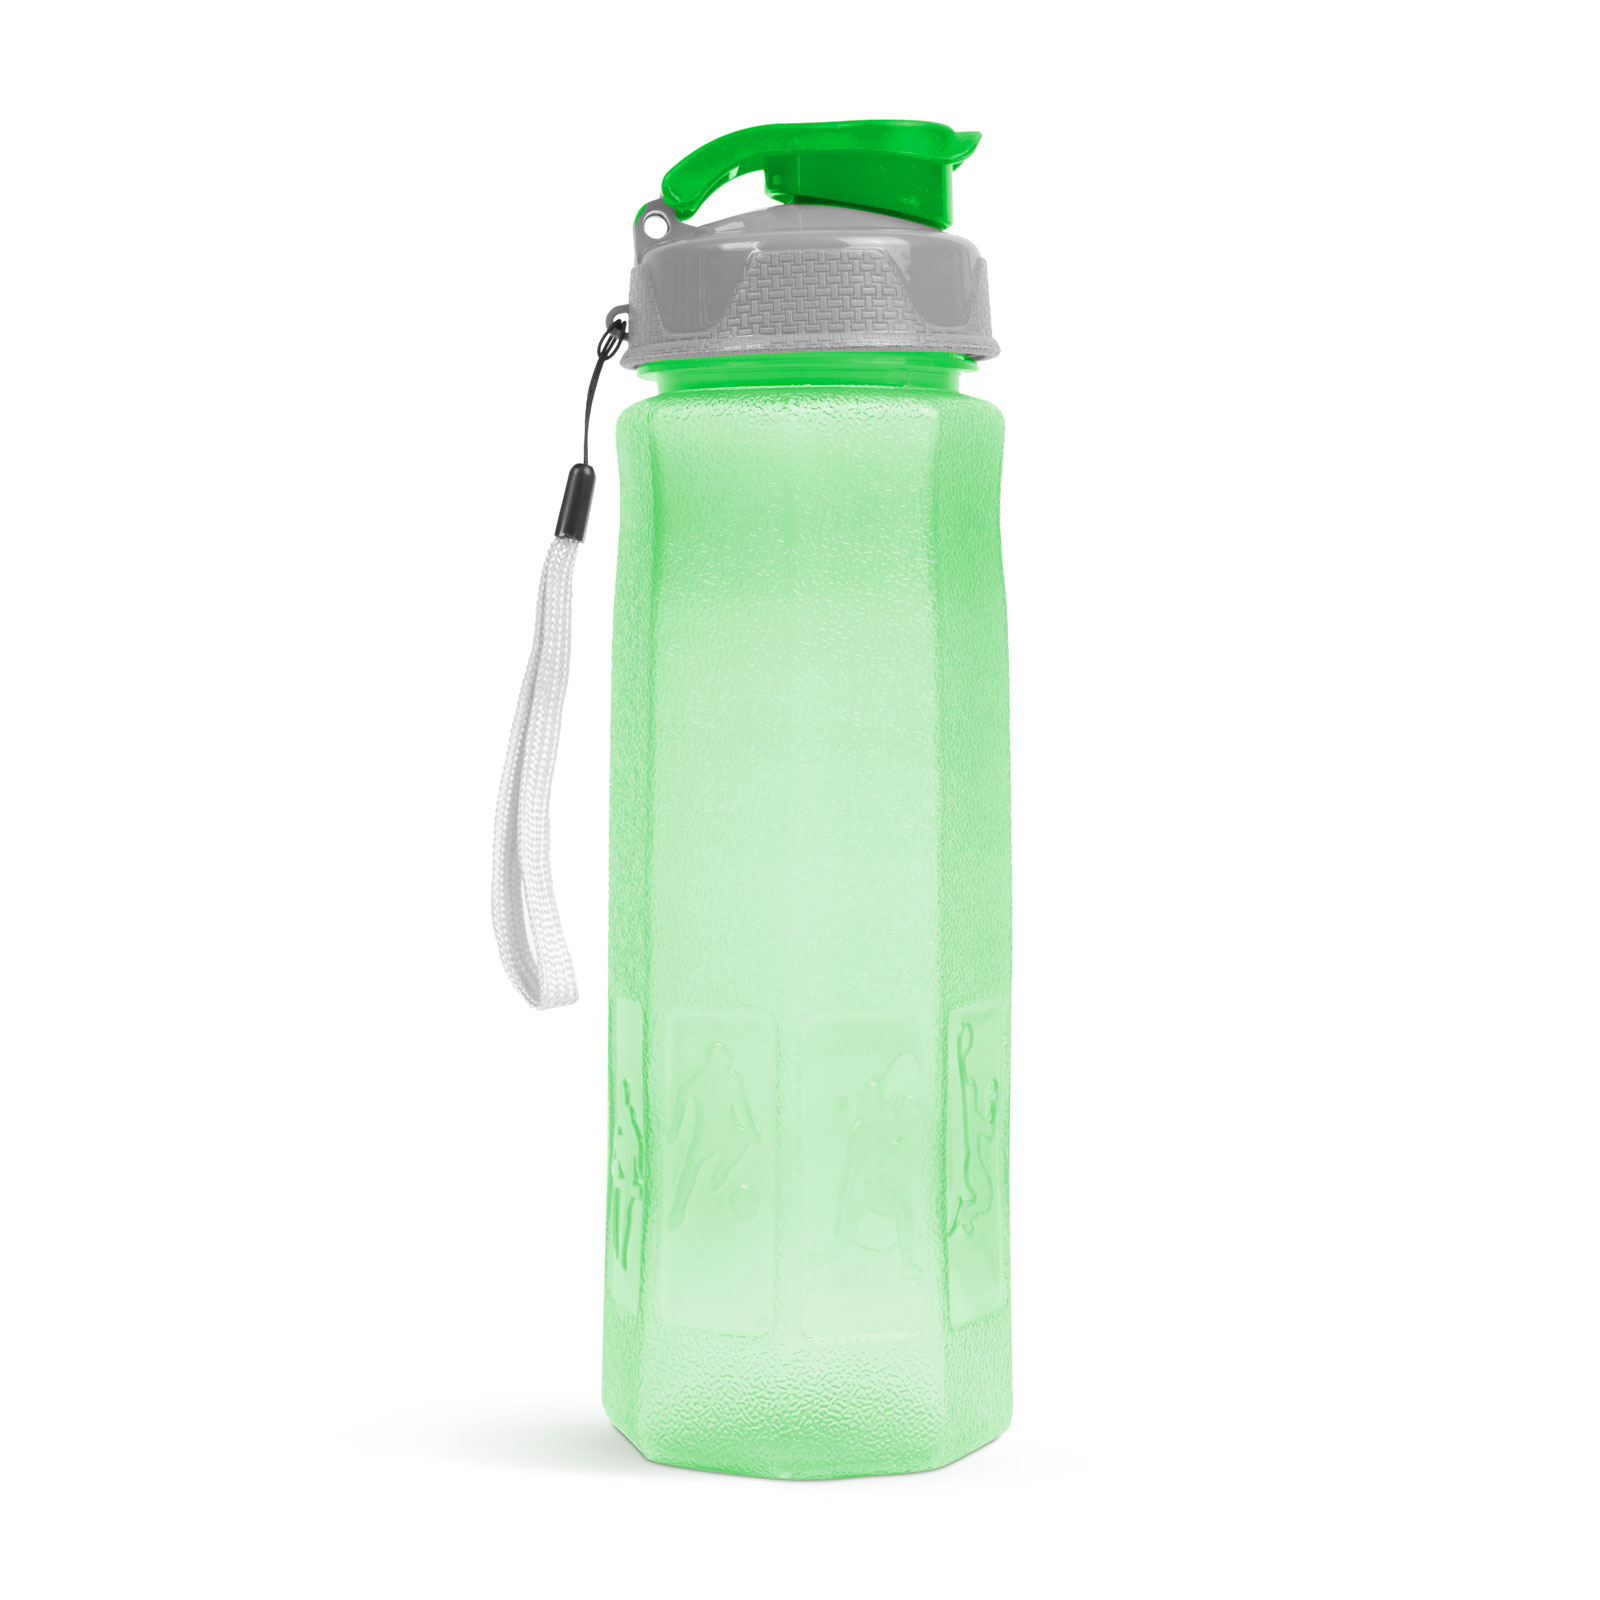 Sticlă sport - plastic transparent - 800 ml - 3 culori